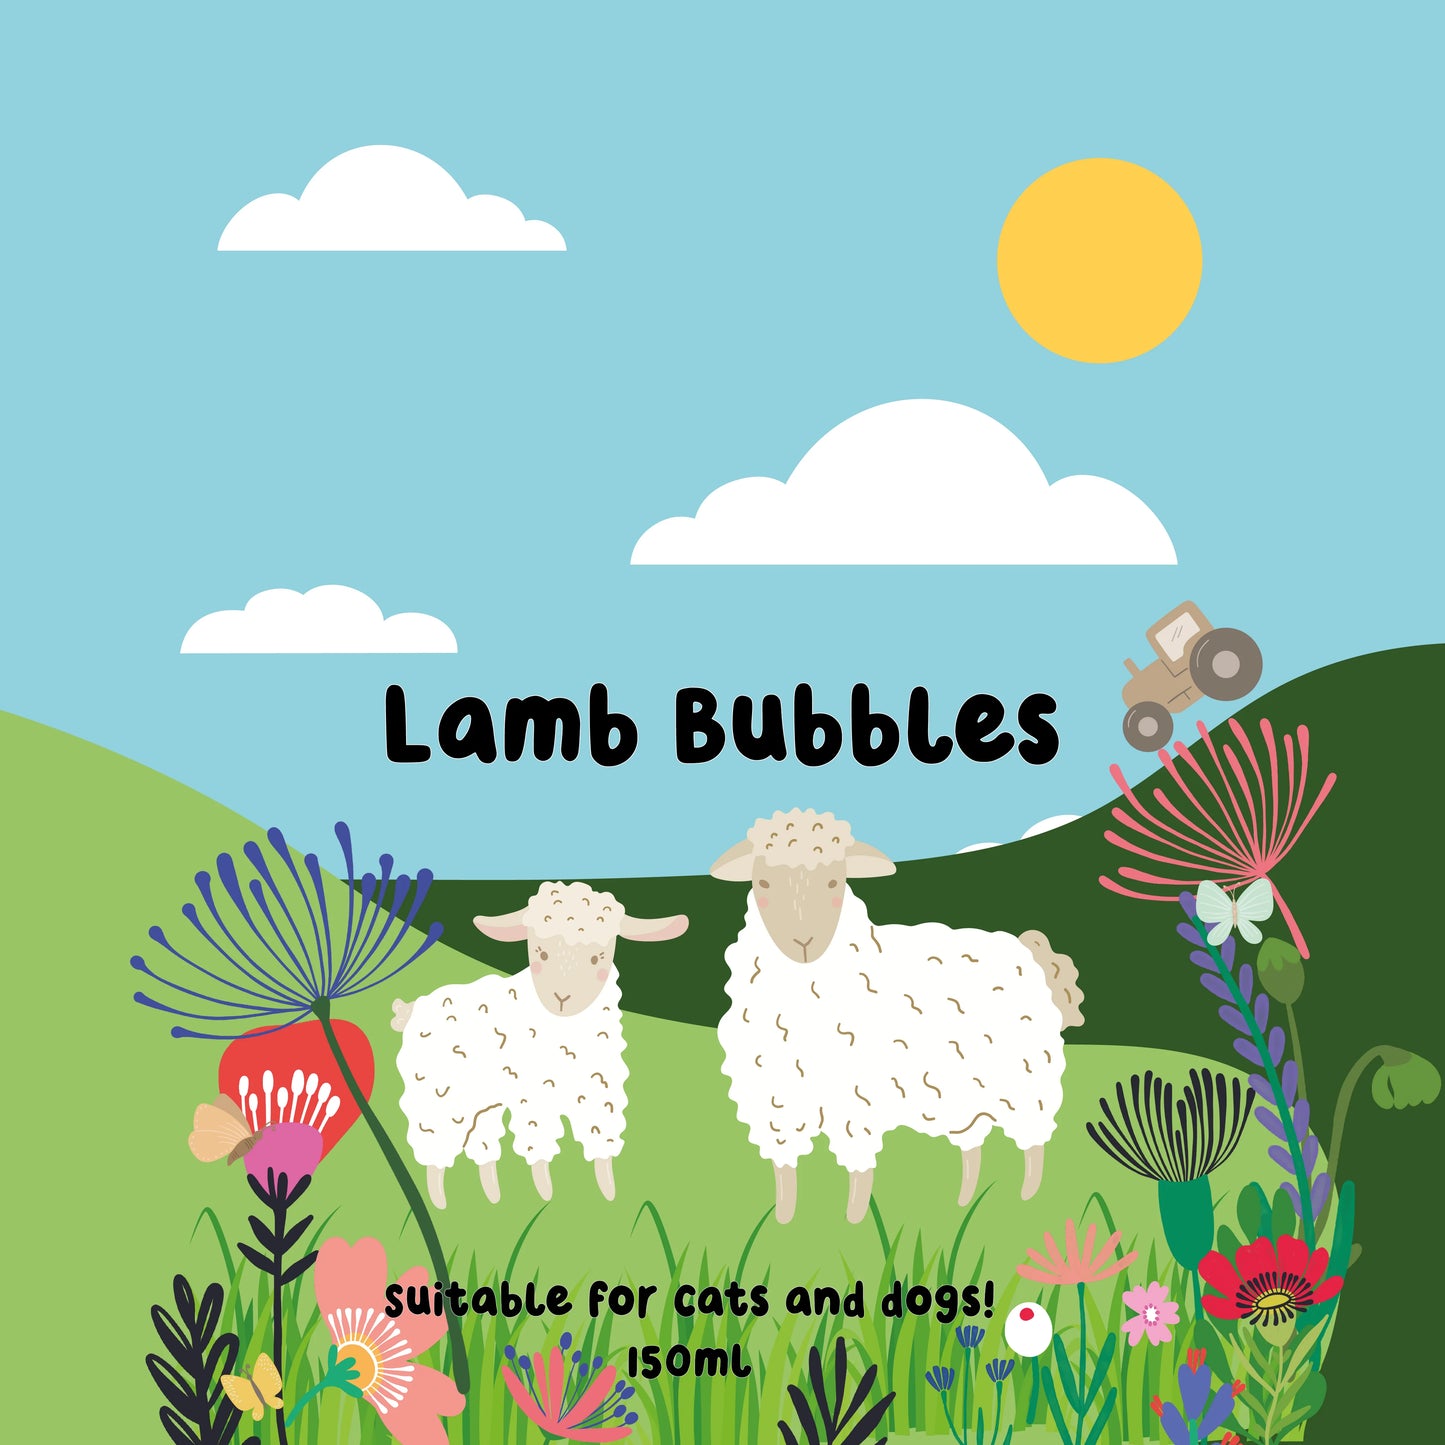 Lamb bubbles